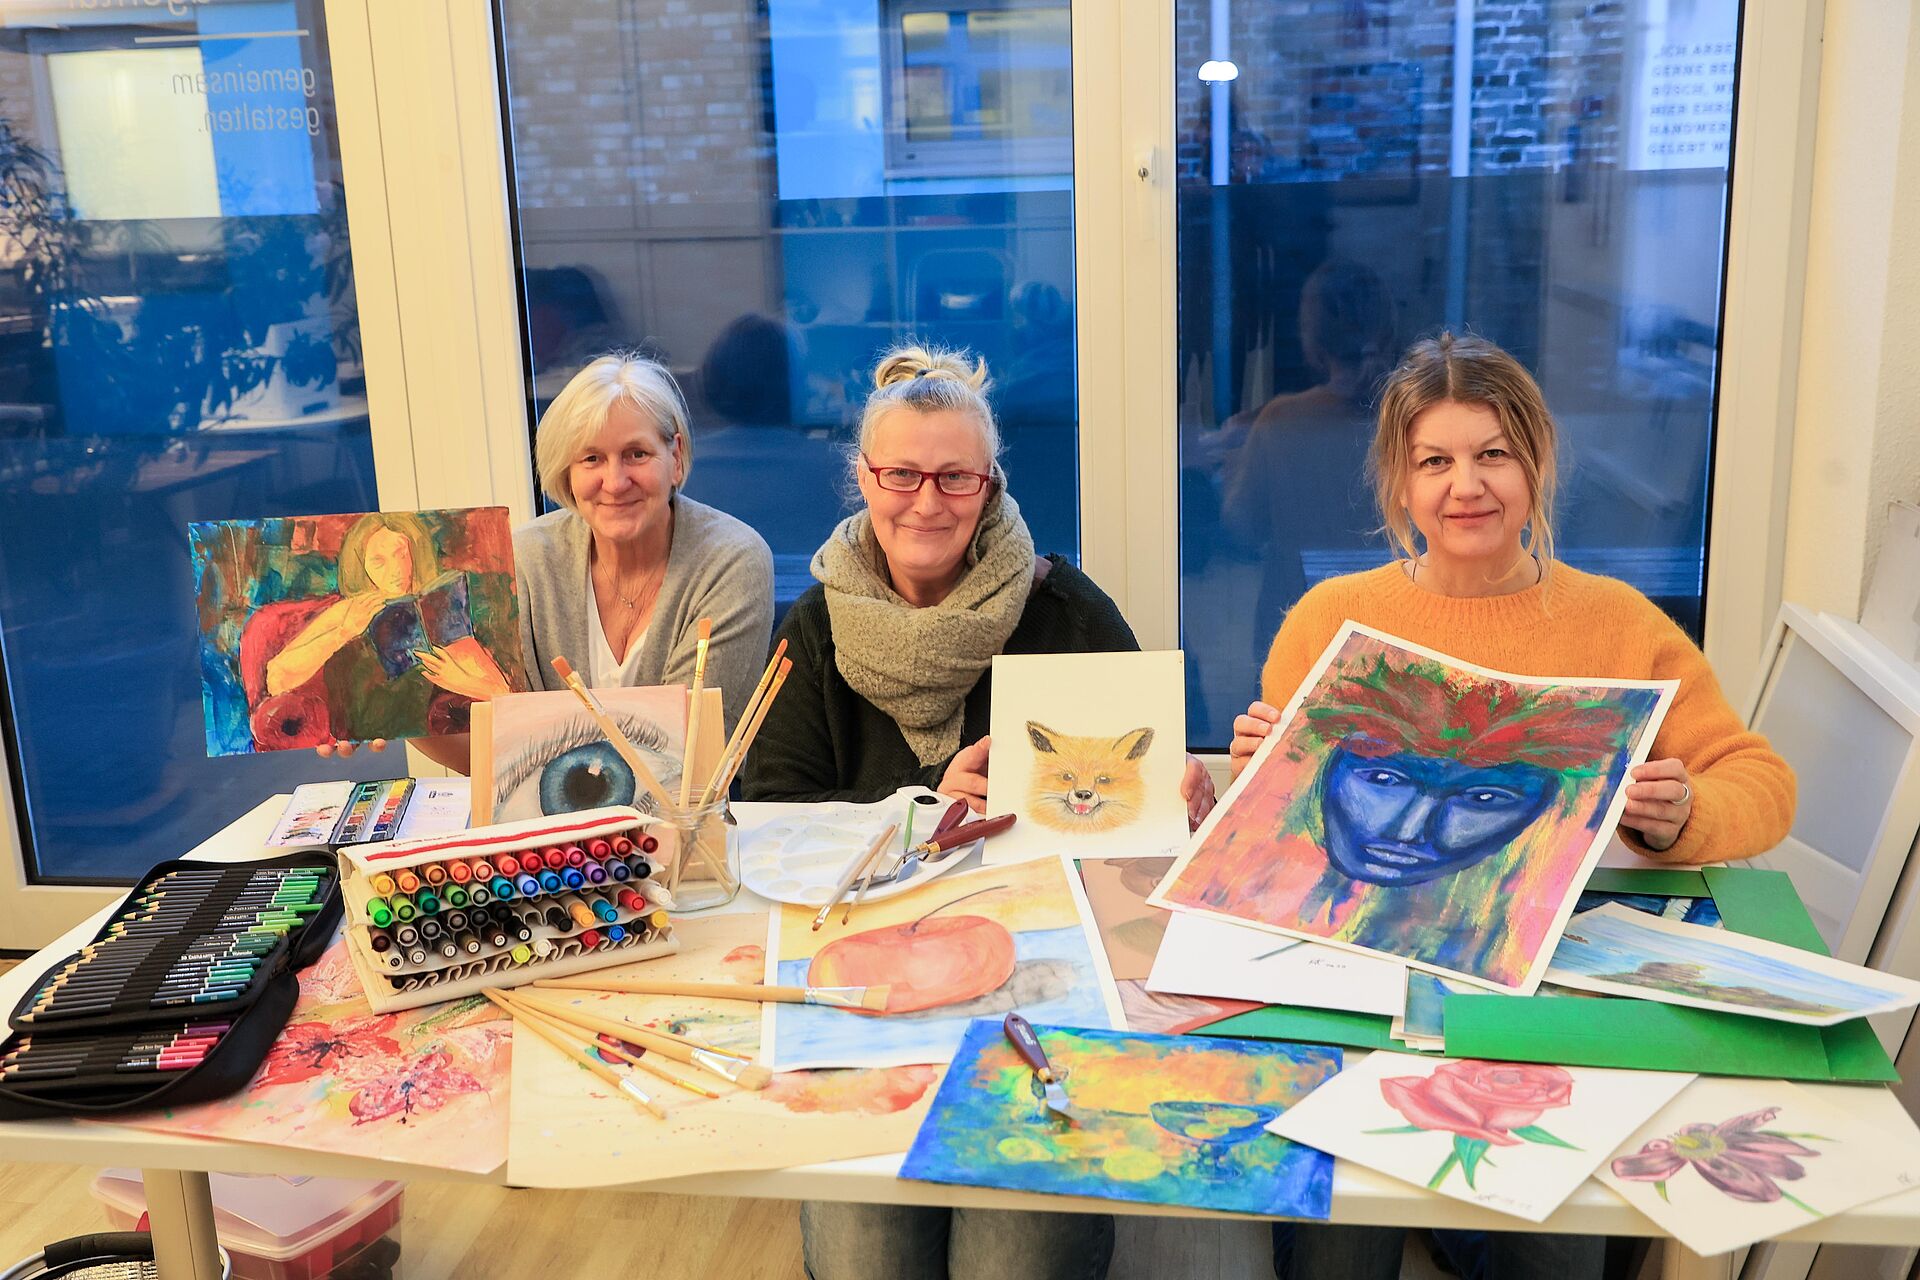 Drei Frauen zeigen bunte Zeichnungen und gemalte Bilder auf einem Tisch